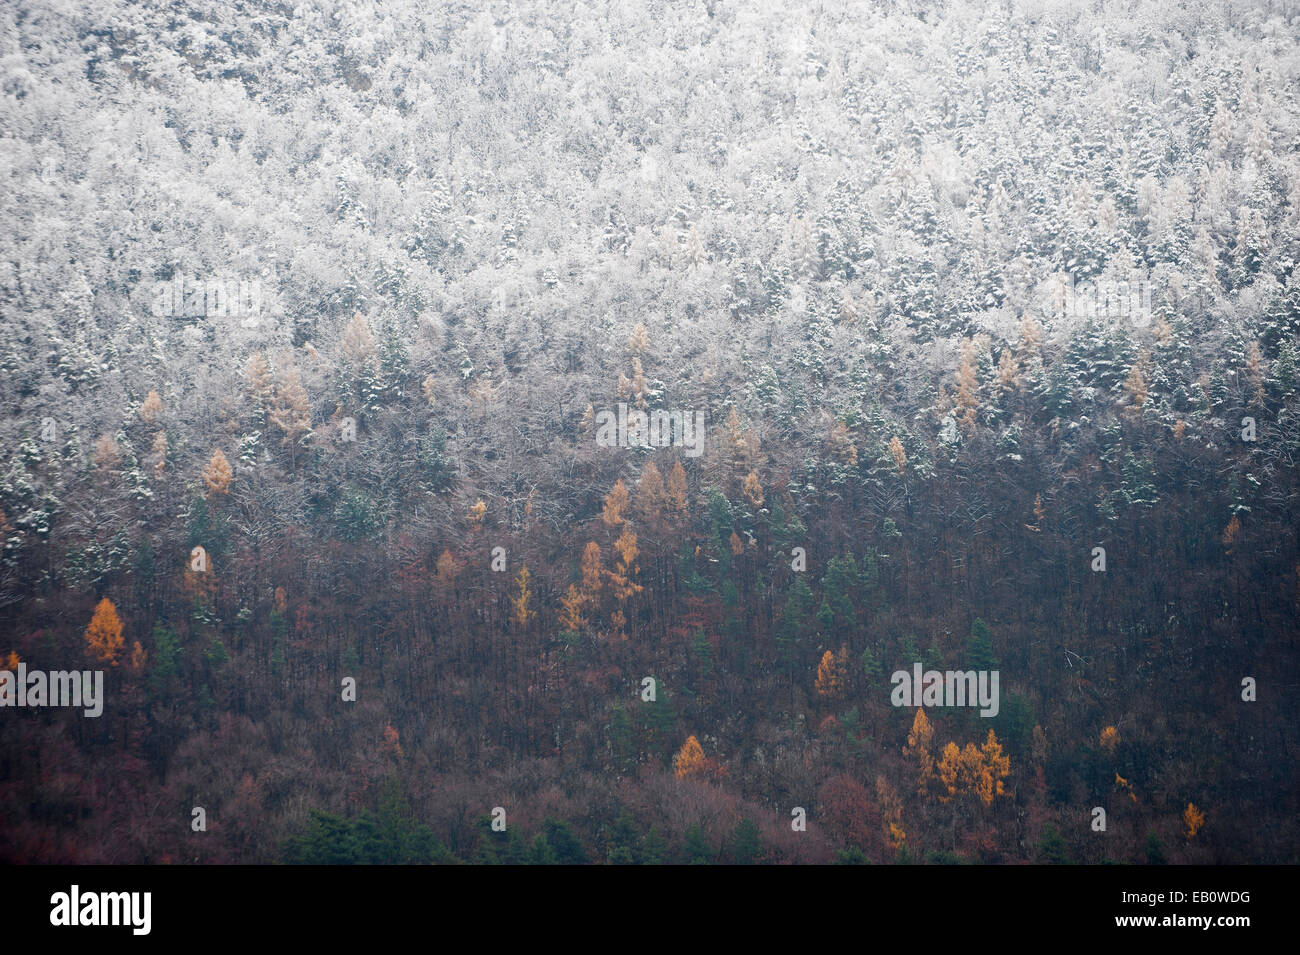 Späten Herbst Szene mit Teil eines Waldes mit frischem Schnee bedeckt Stockfoto